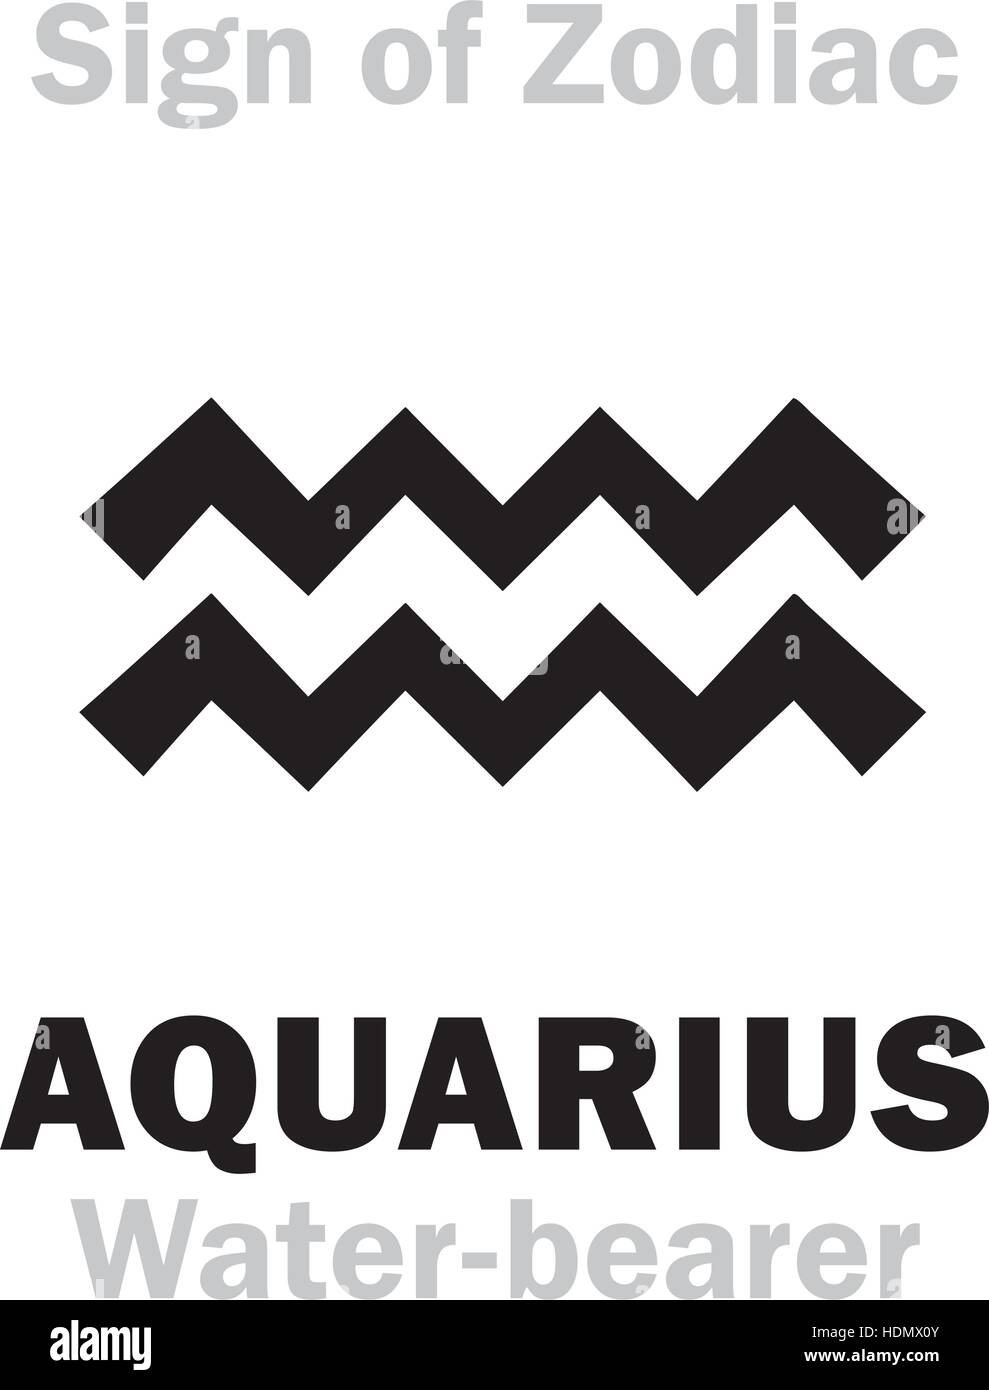 Aquarius symbol Stock Vector Images - Alamy